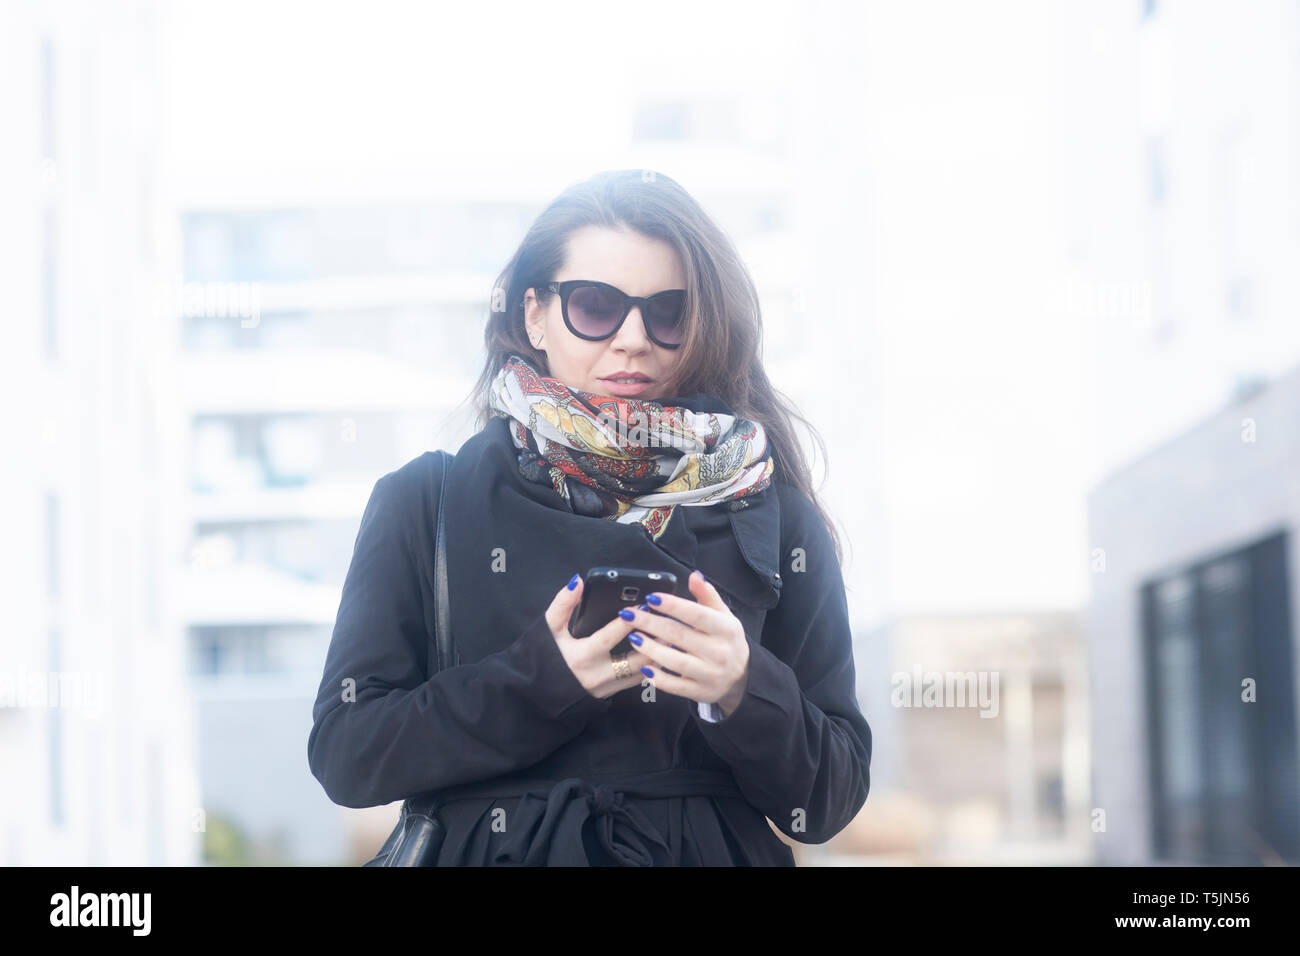 Portrait de jeune femme portant manteau, écharpe et lunettes looking at cell phone Banque D'Images